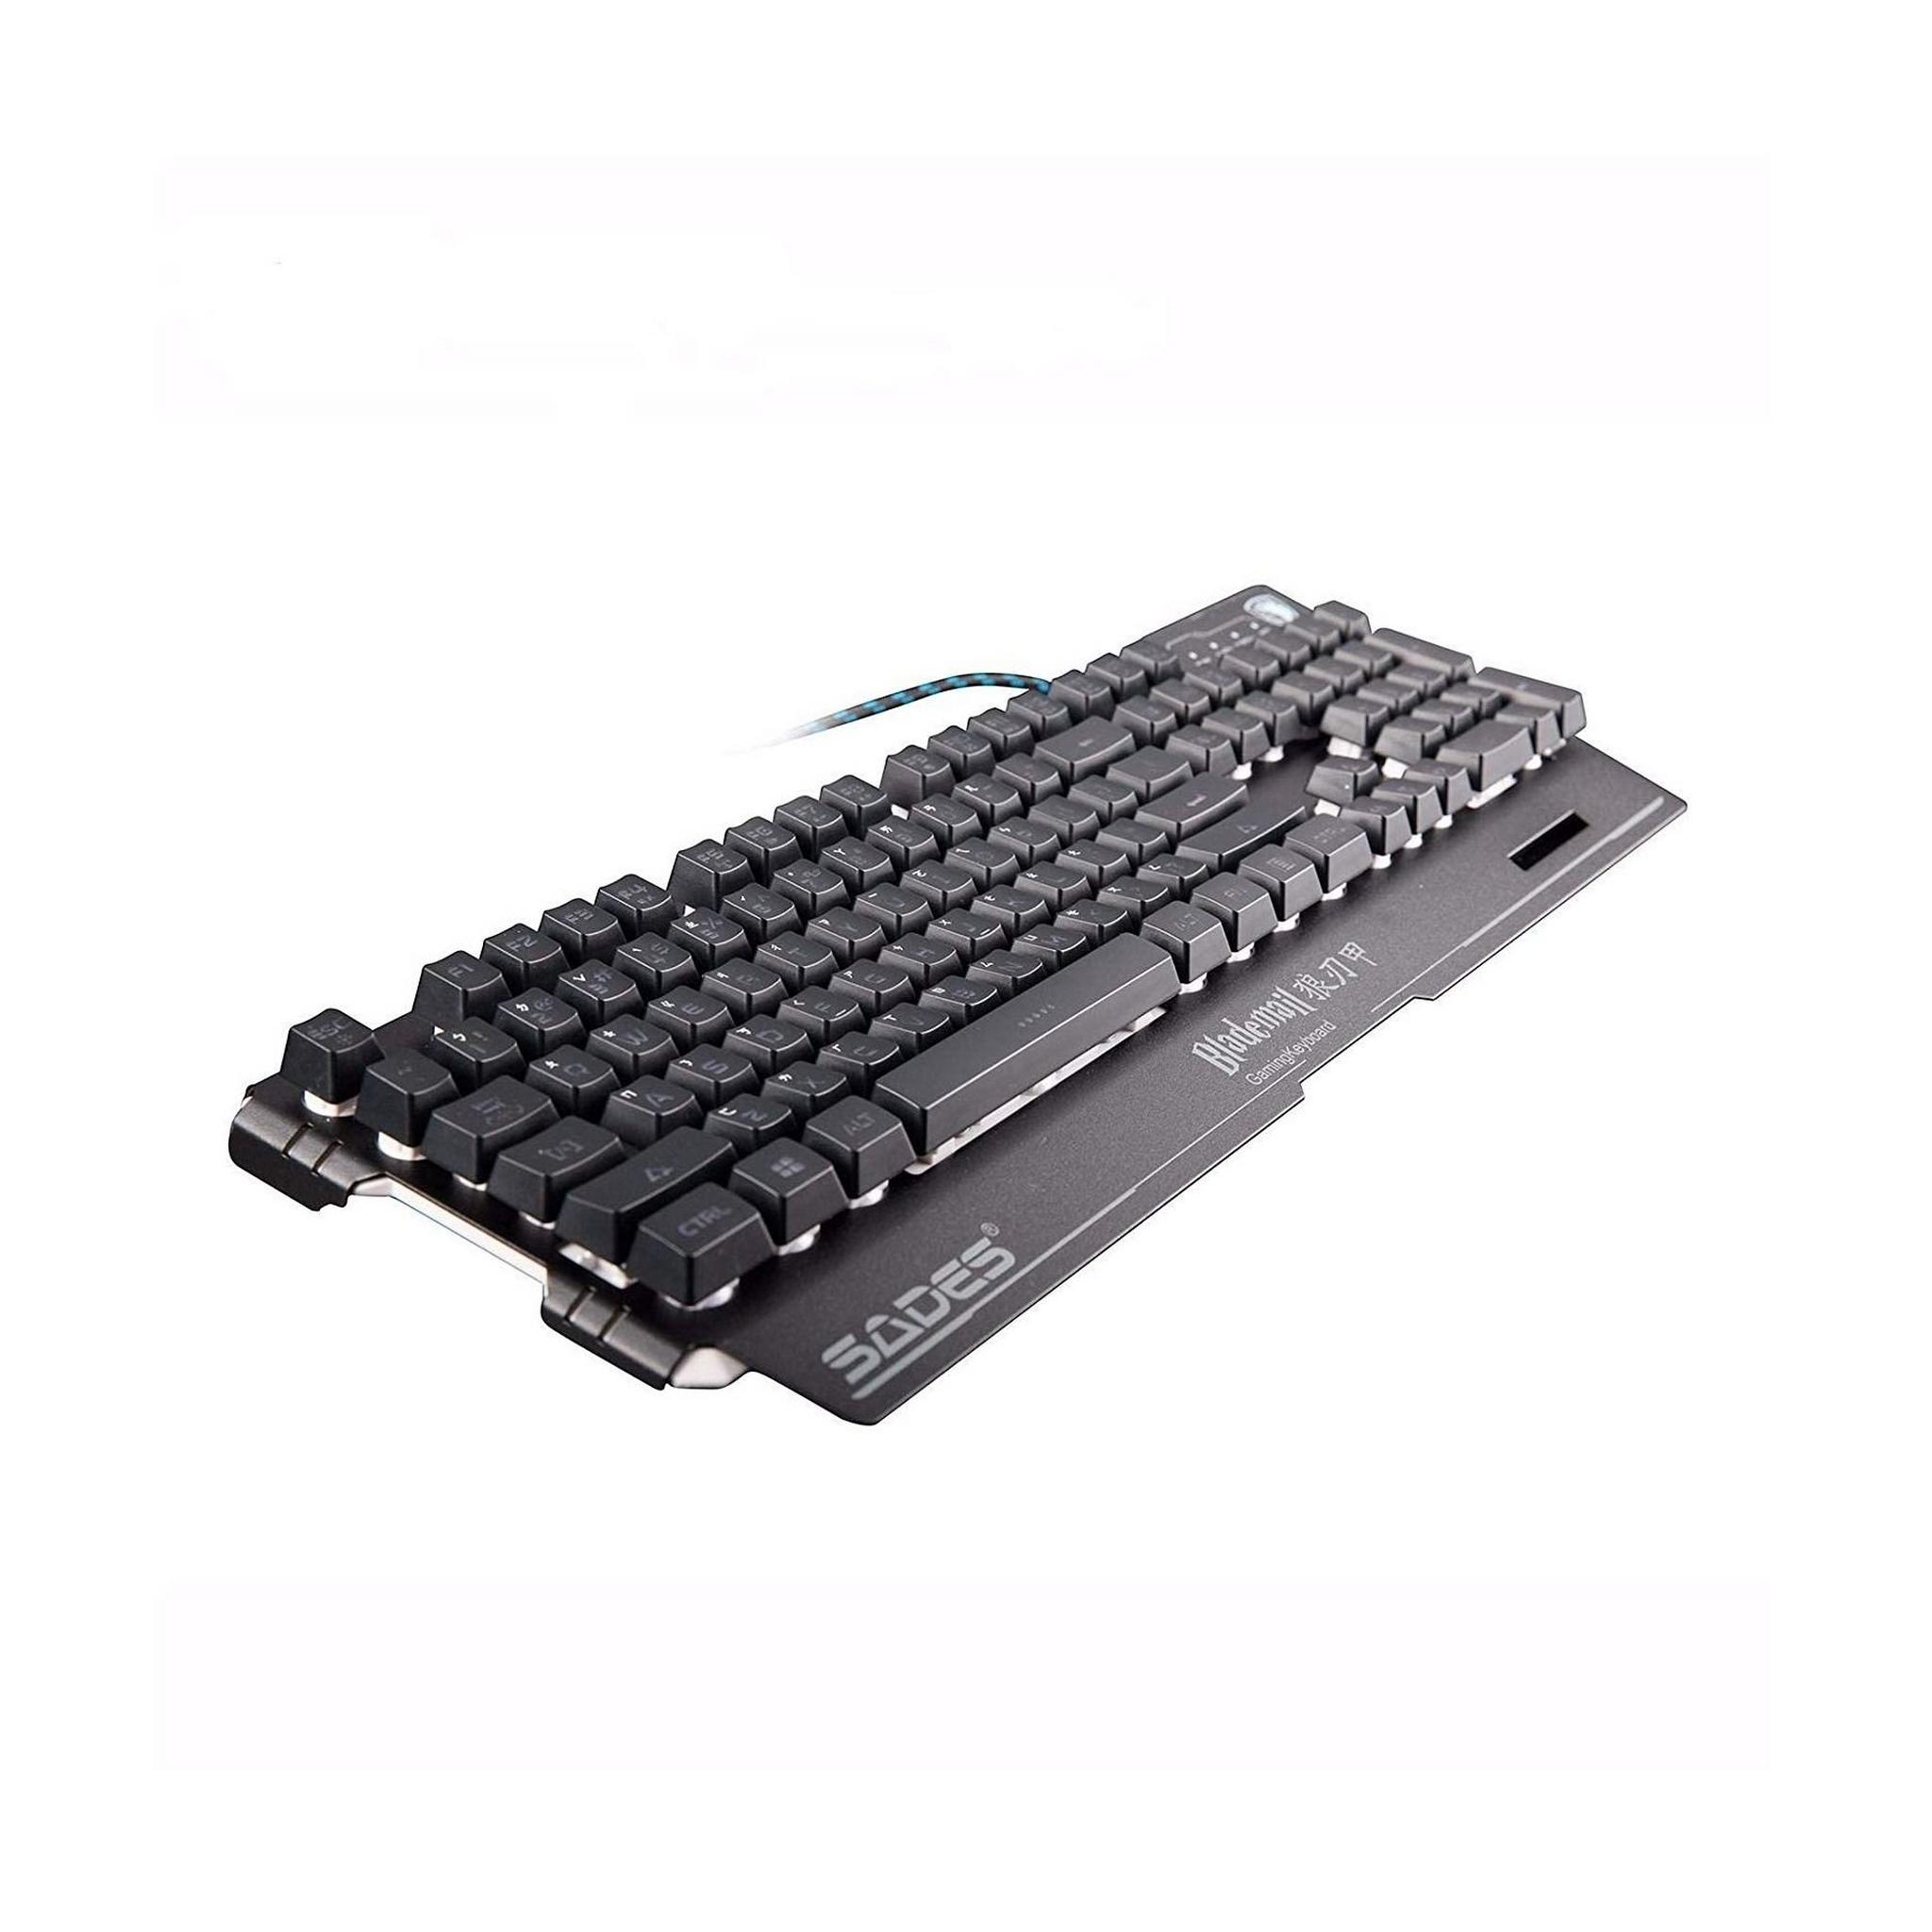 Sades Neo Blademail Gaming Keyboard (SA-KB104S)